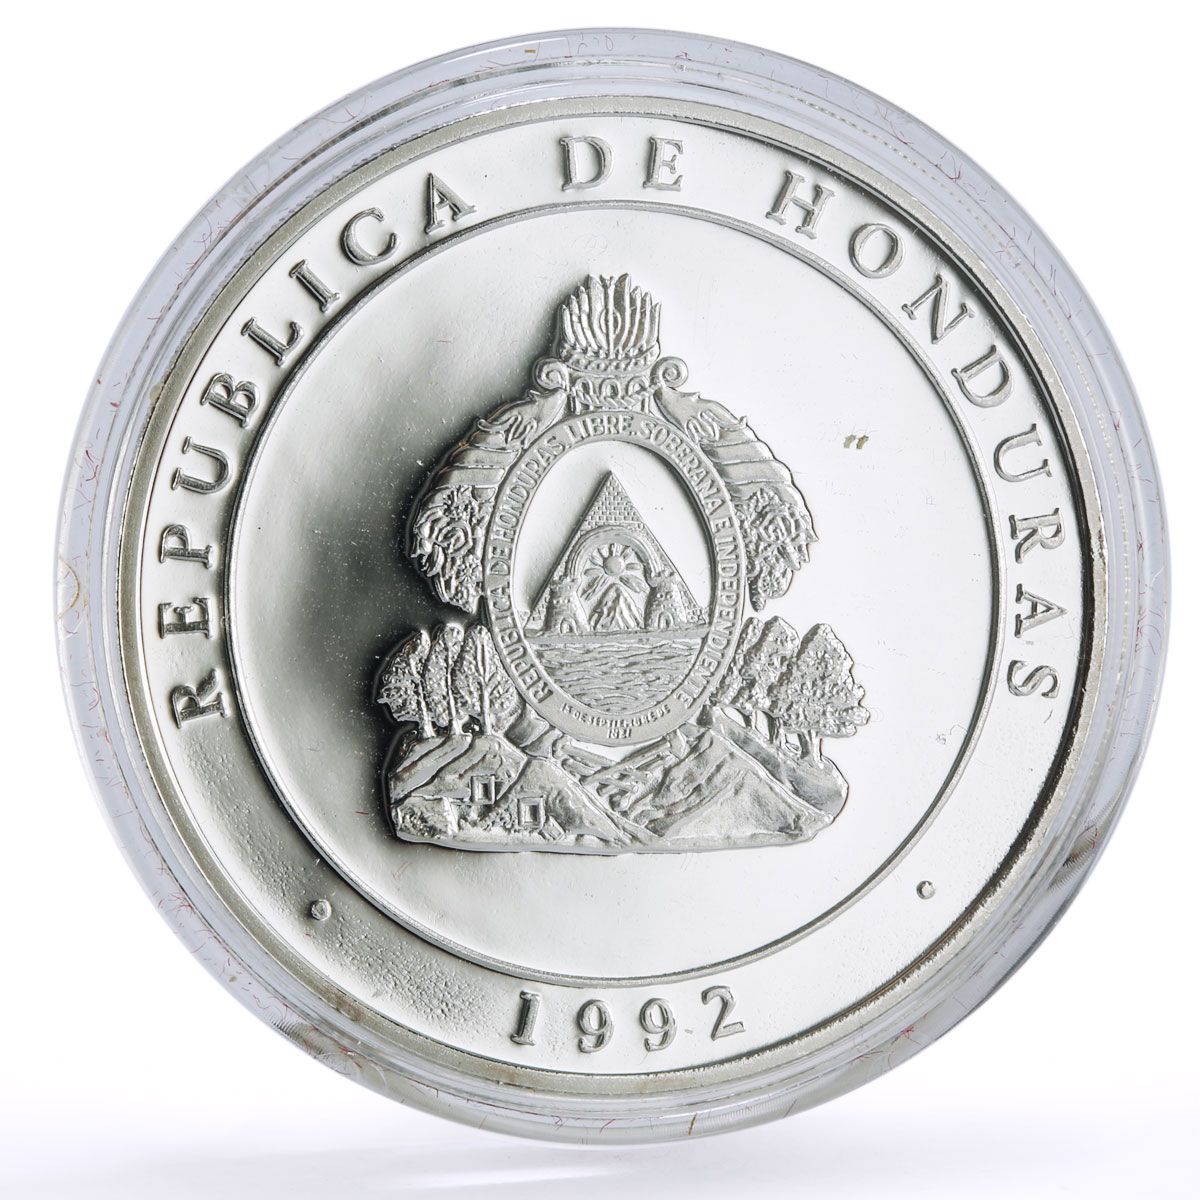 Honduras 100 lempiras Two Worlds Encounter America Discovery Ship Ag coin 1992